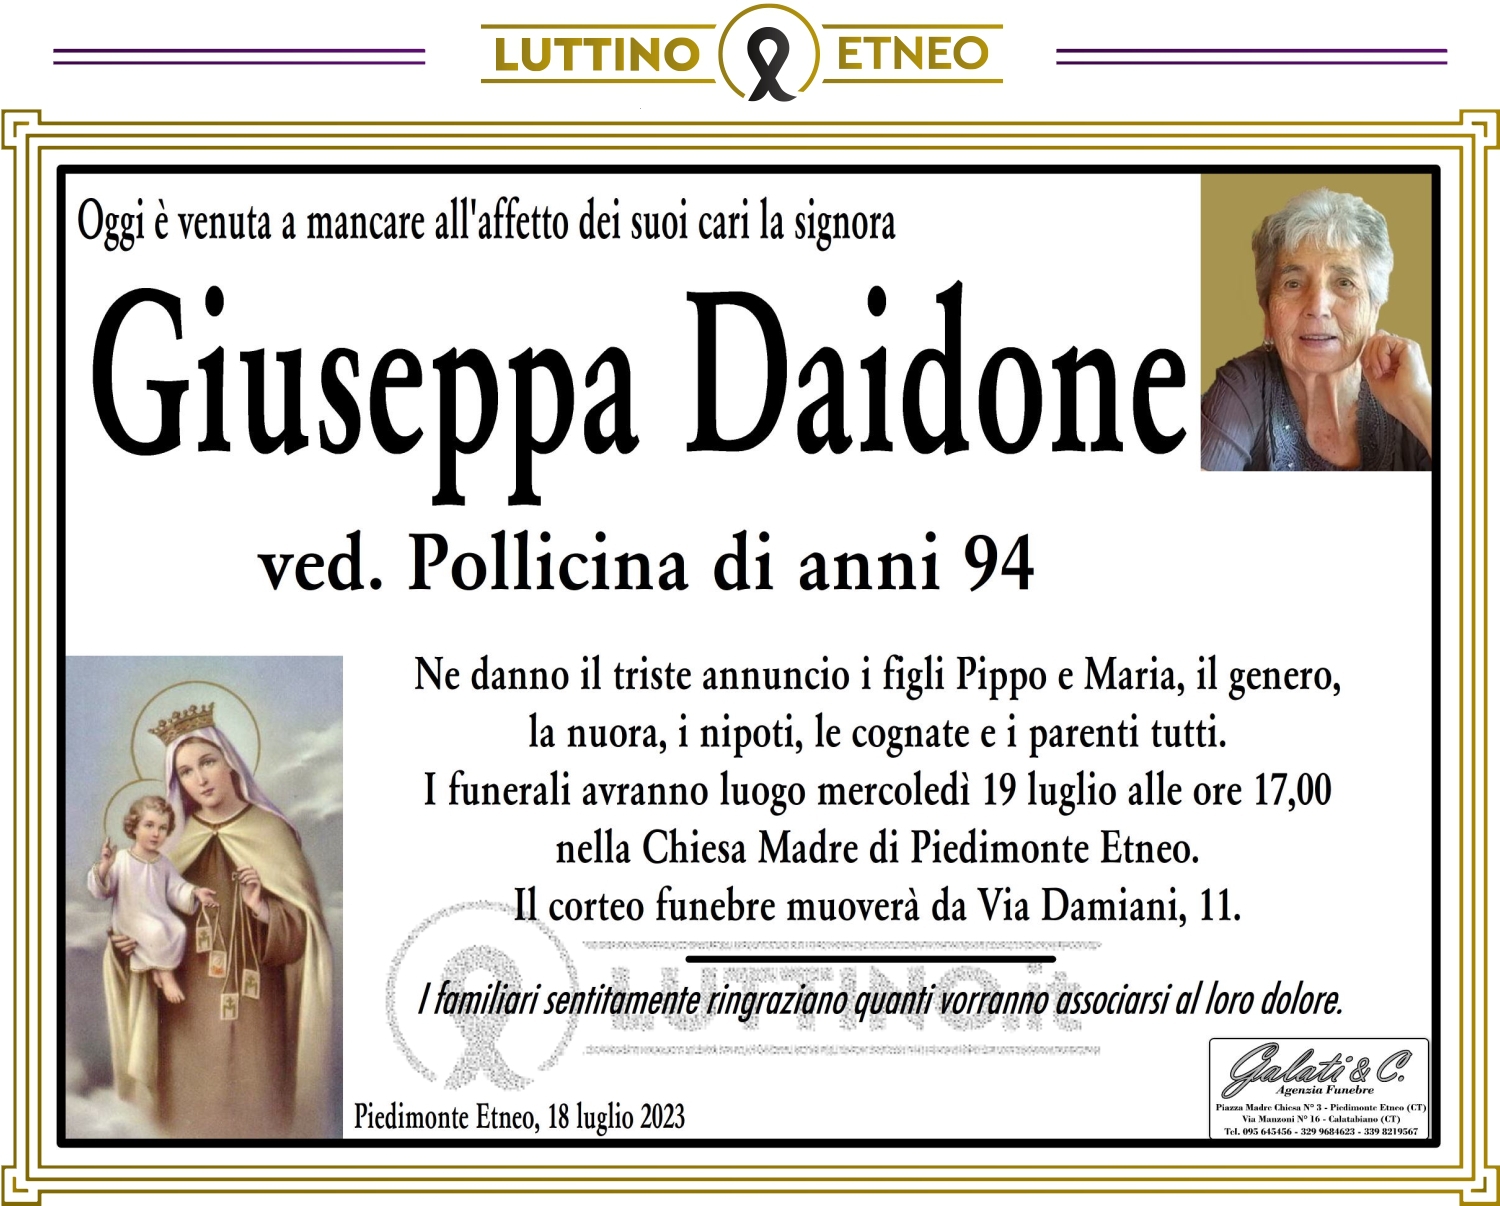 Giuseppa Daidone